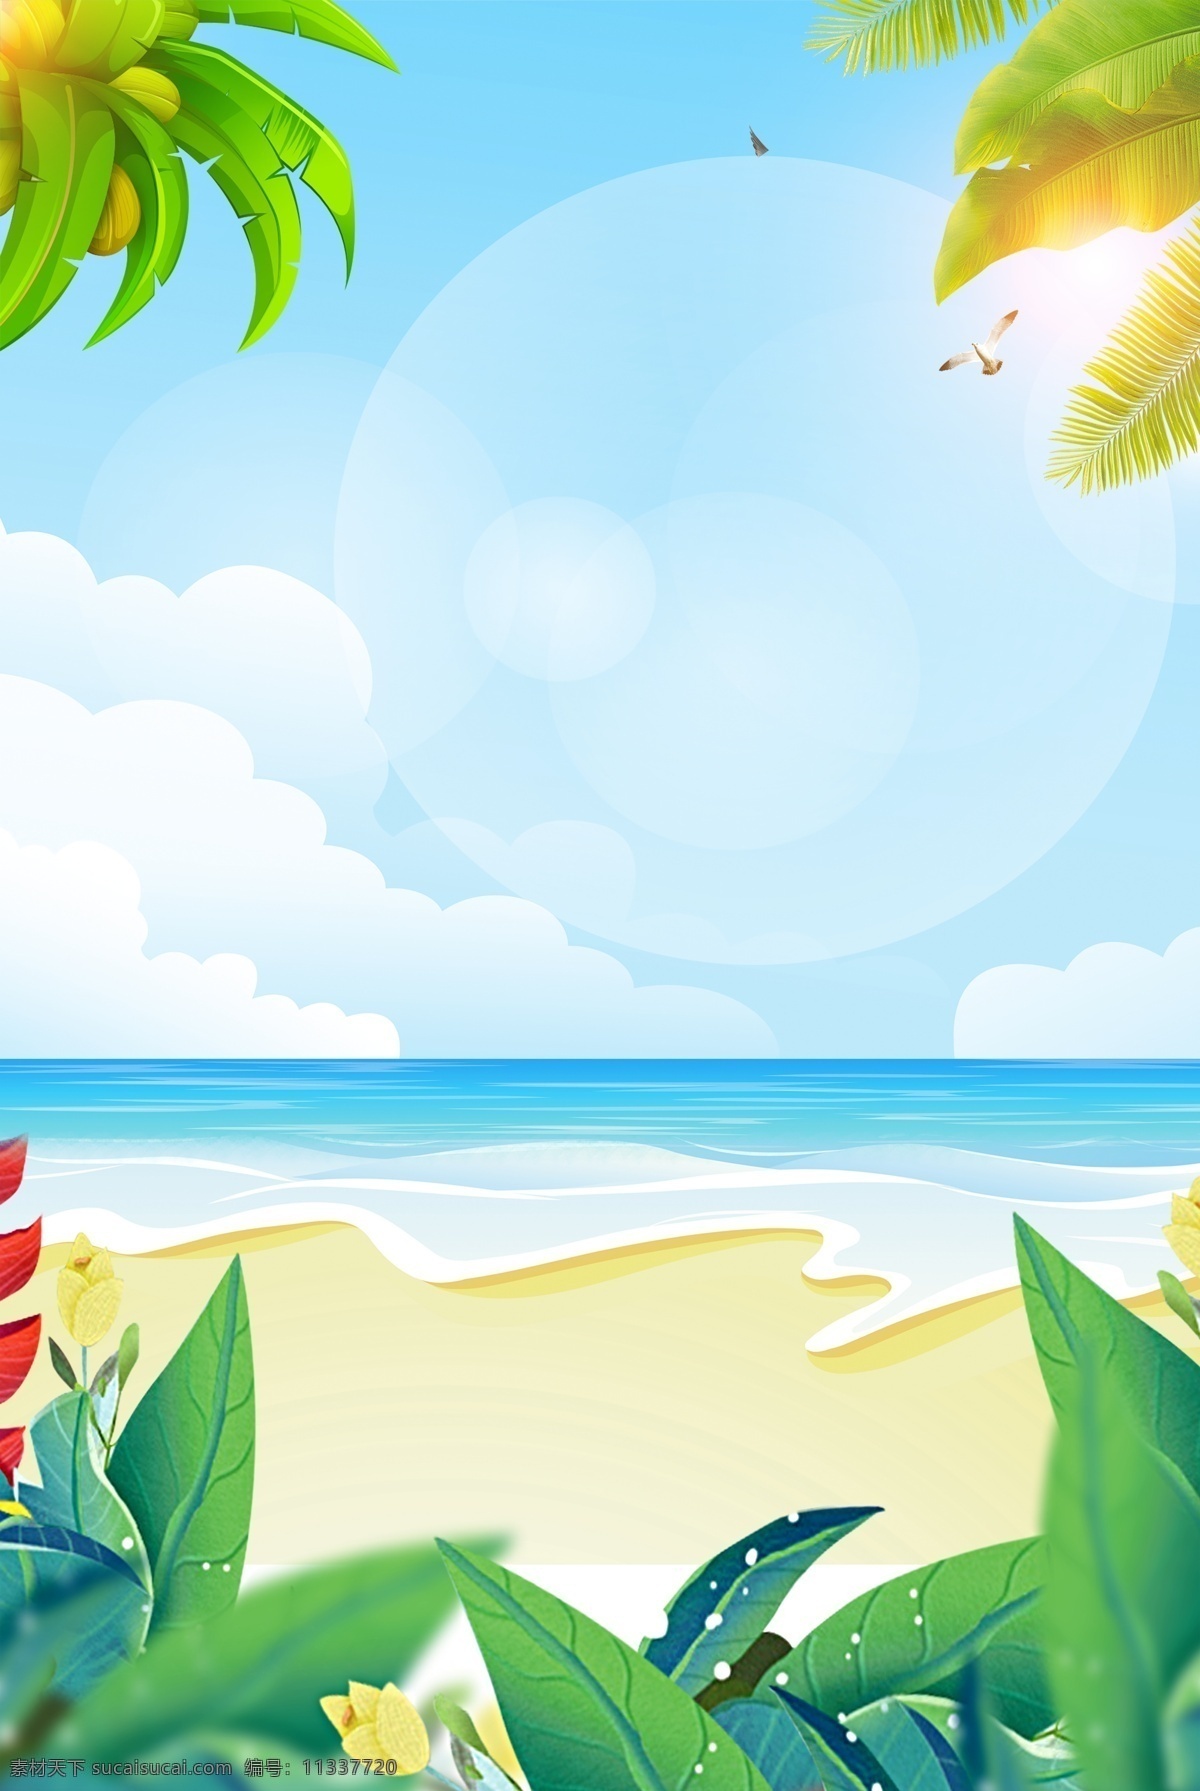 夏至 海边 创意 海报 背景 阳光 沙滩 海浪 蓝天 大海 浪花 草丛 绿叶 夏天 24节气